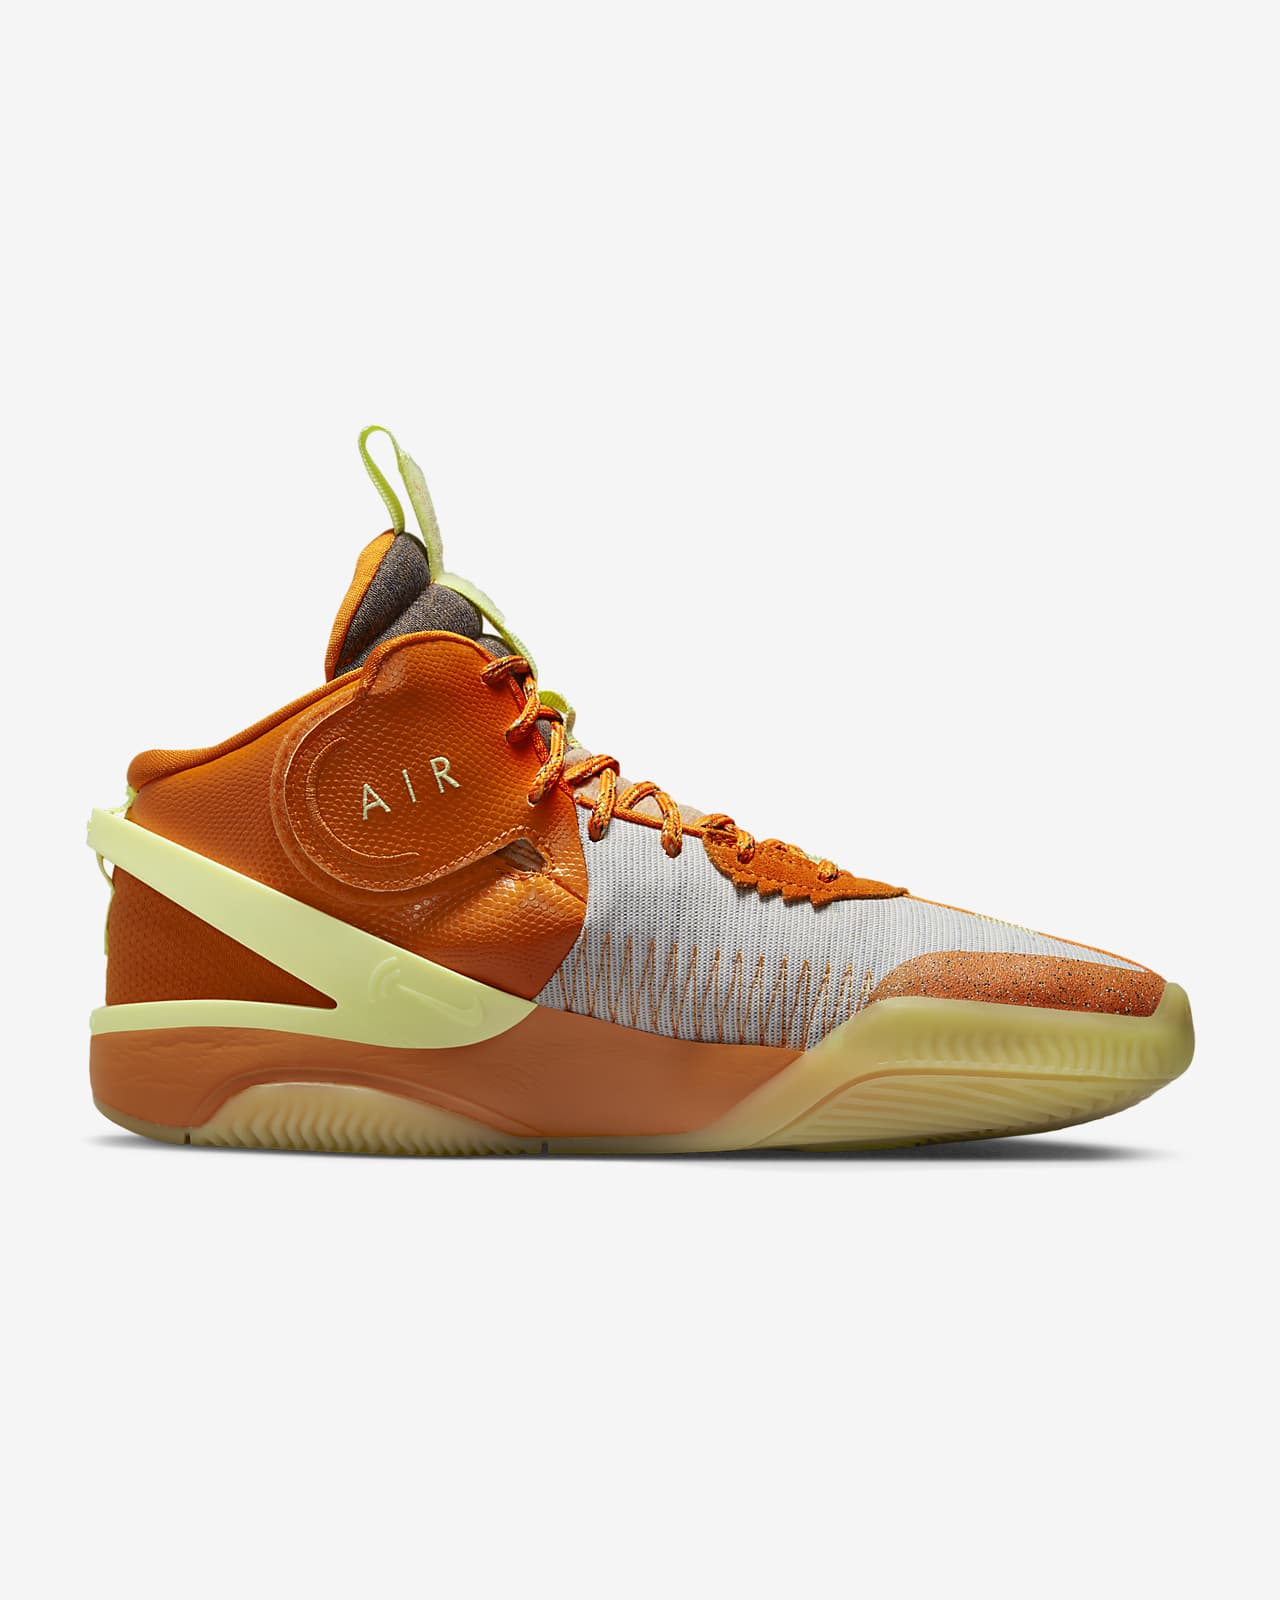 Precioso mero apretón Nike Air Deldon "Hoodie" Basketball Shoes. Nike ID